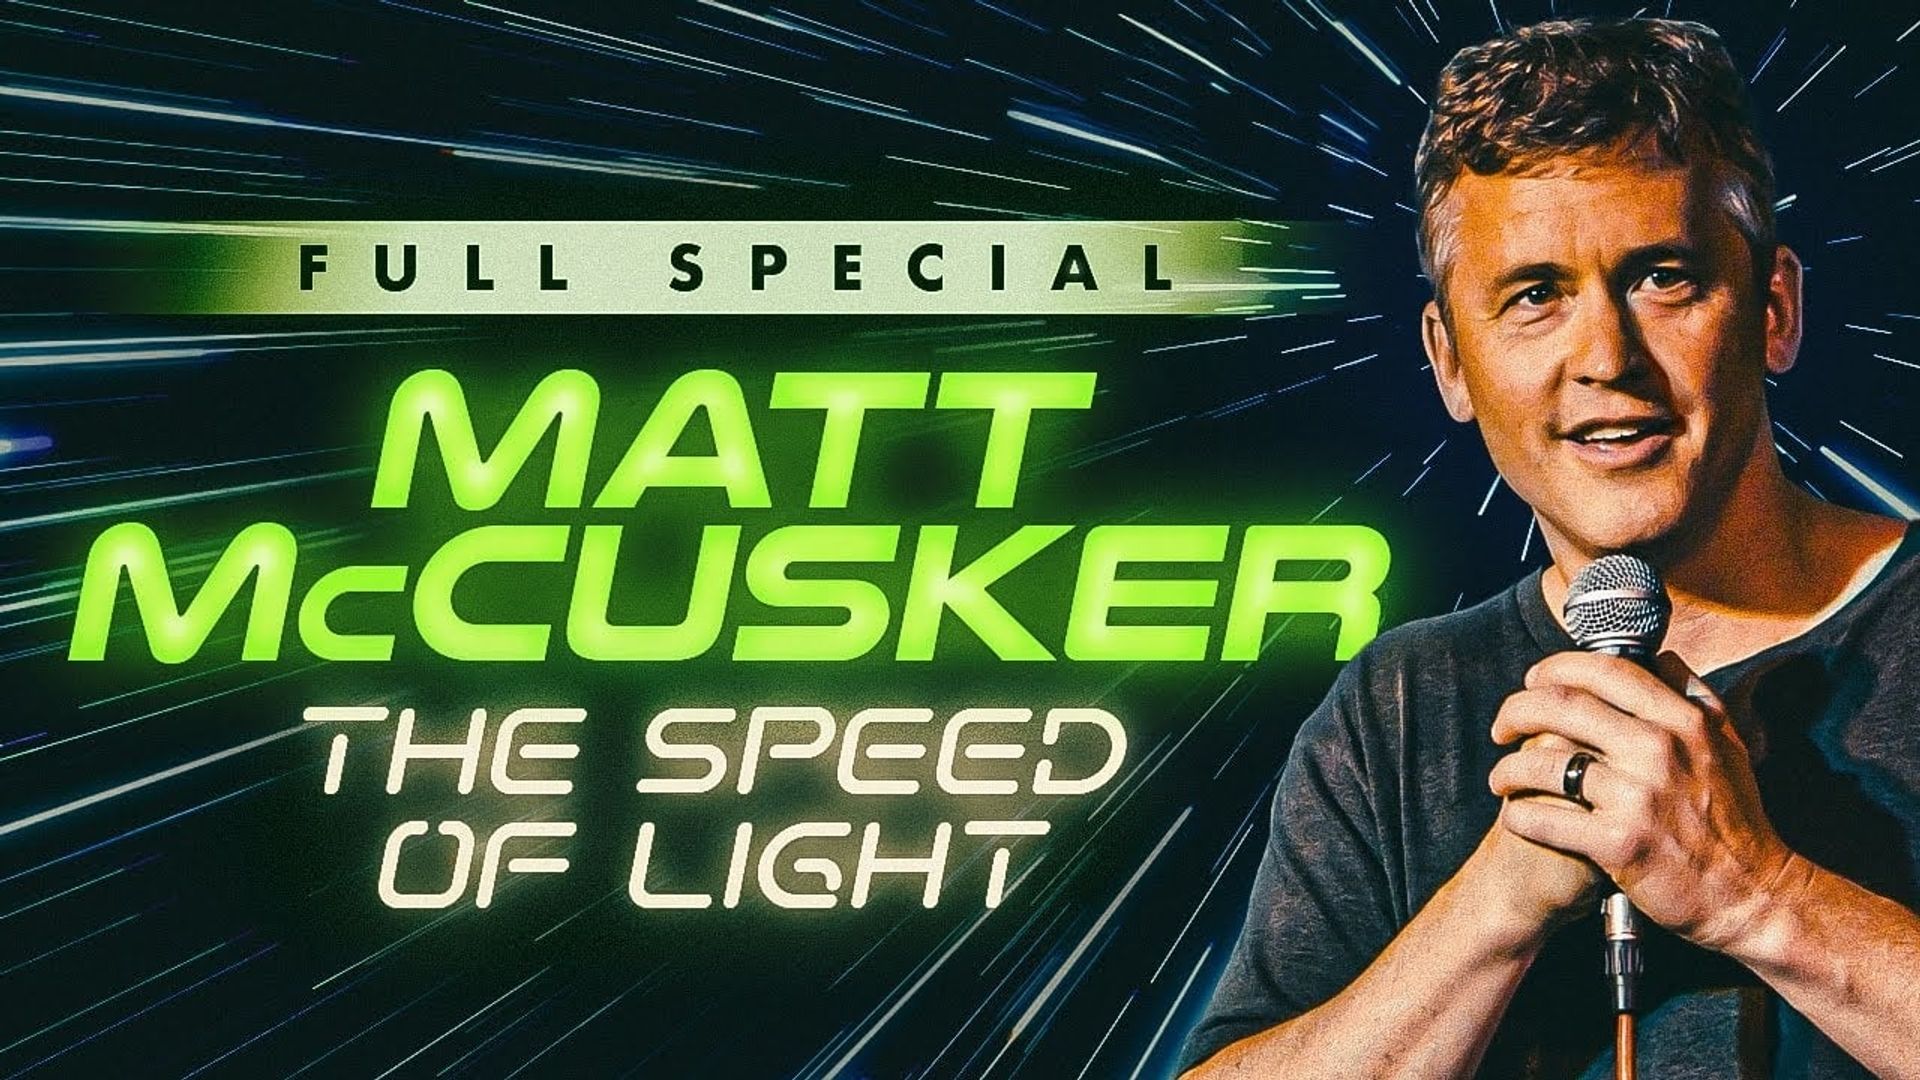 Matt McCusker: The Speed of Light background